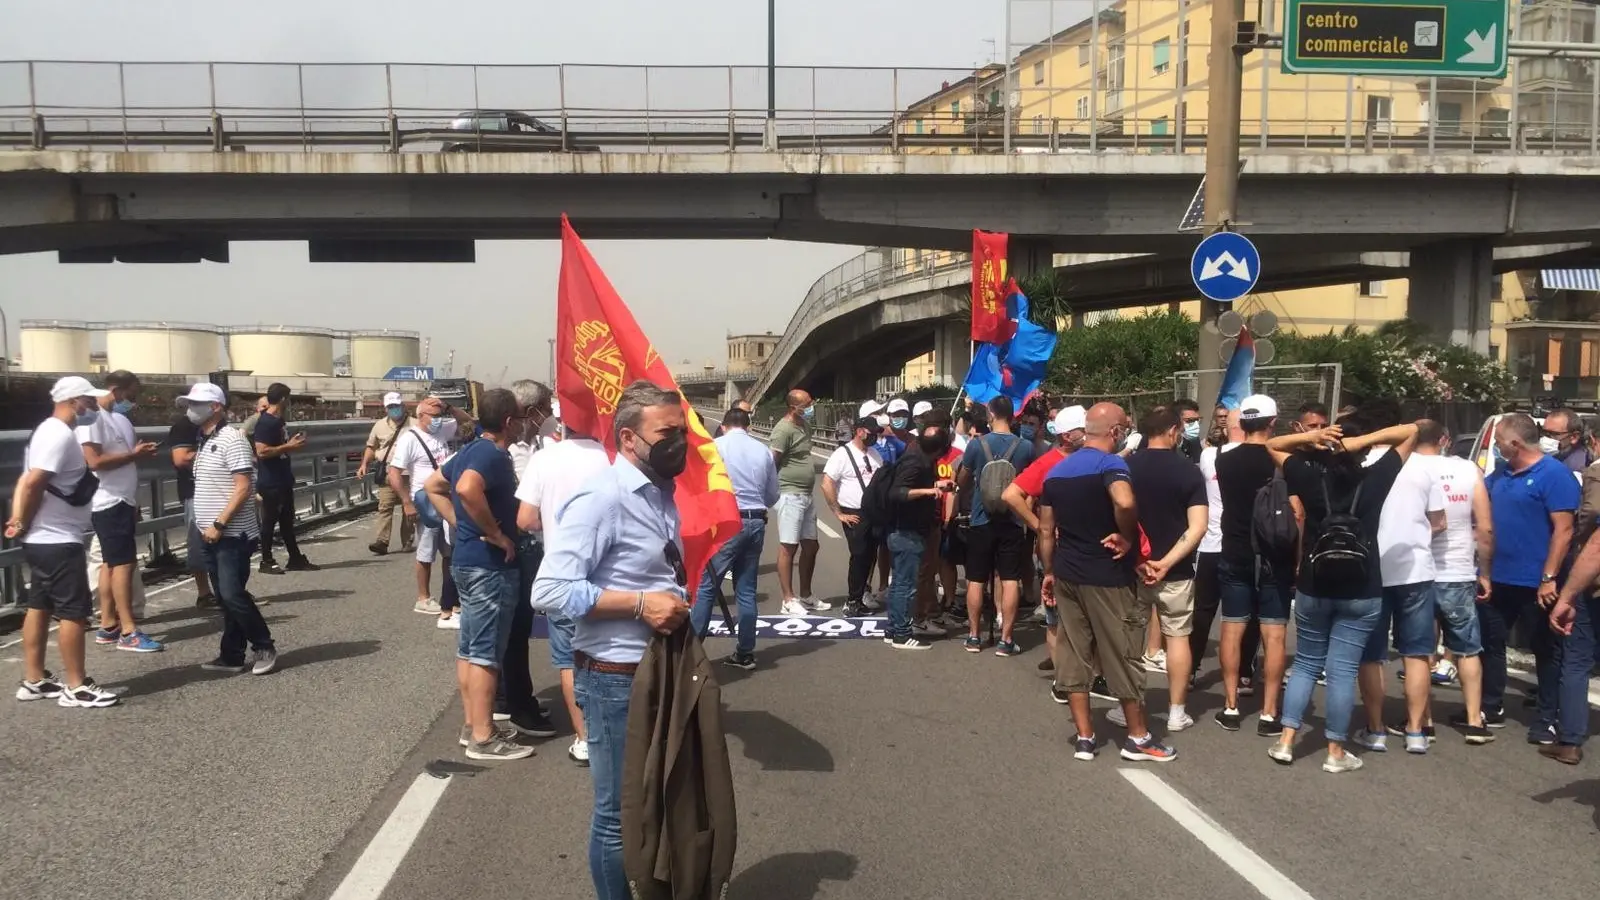 Whirlpool, lavoratori occupano svincolo autostradale a Napoli